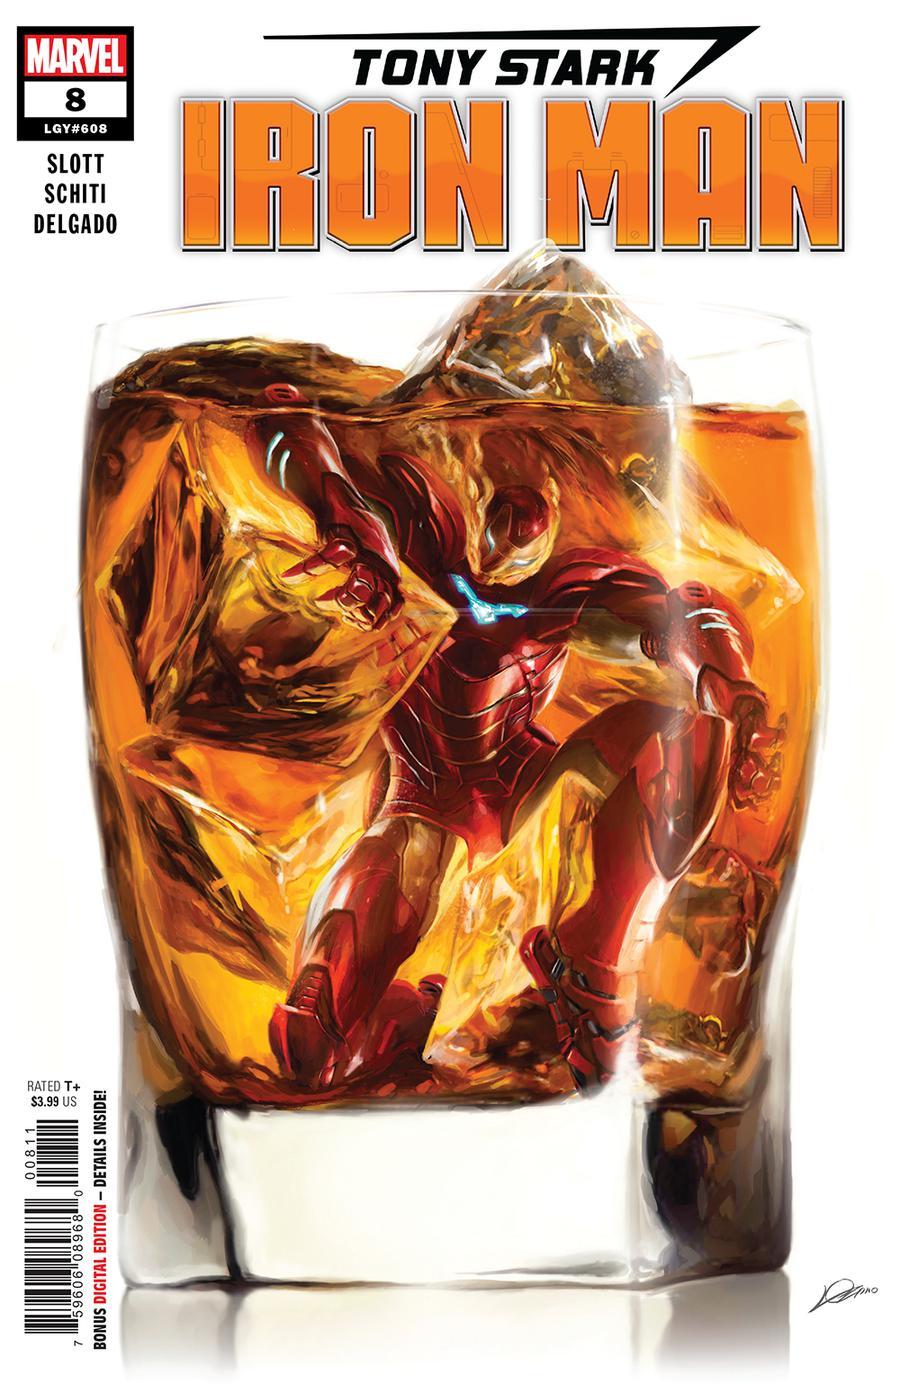 Tony Stark Iron Man Vol. 1 #8